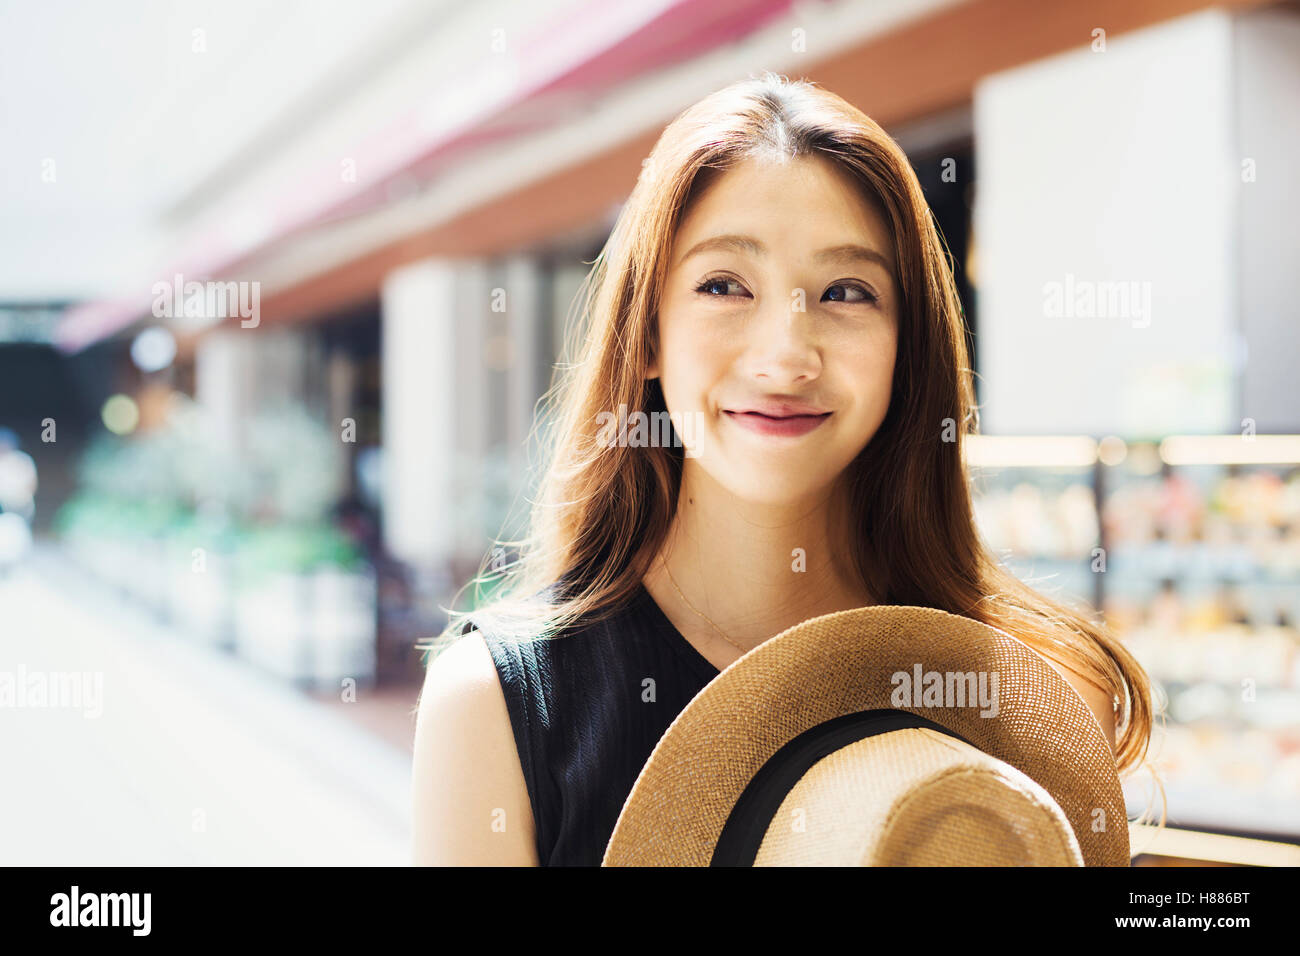 Lächelnde junge Frau mit langen braunen Haaren, mit Panamahut. Stockfoto